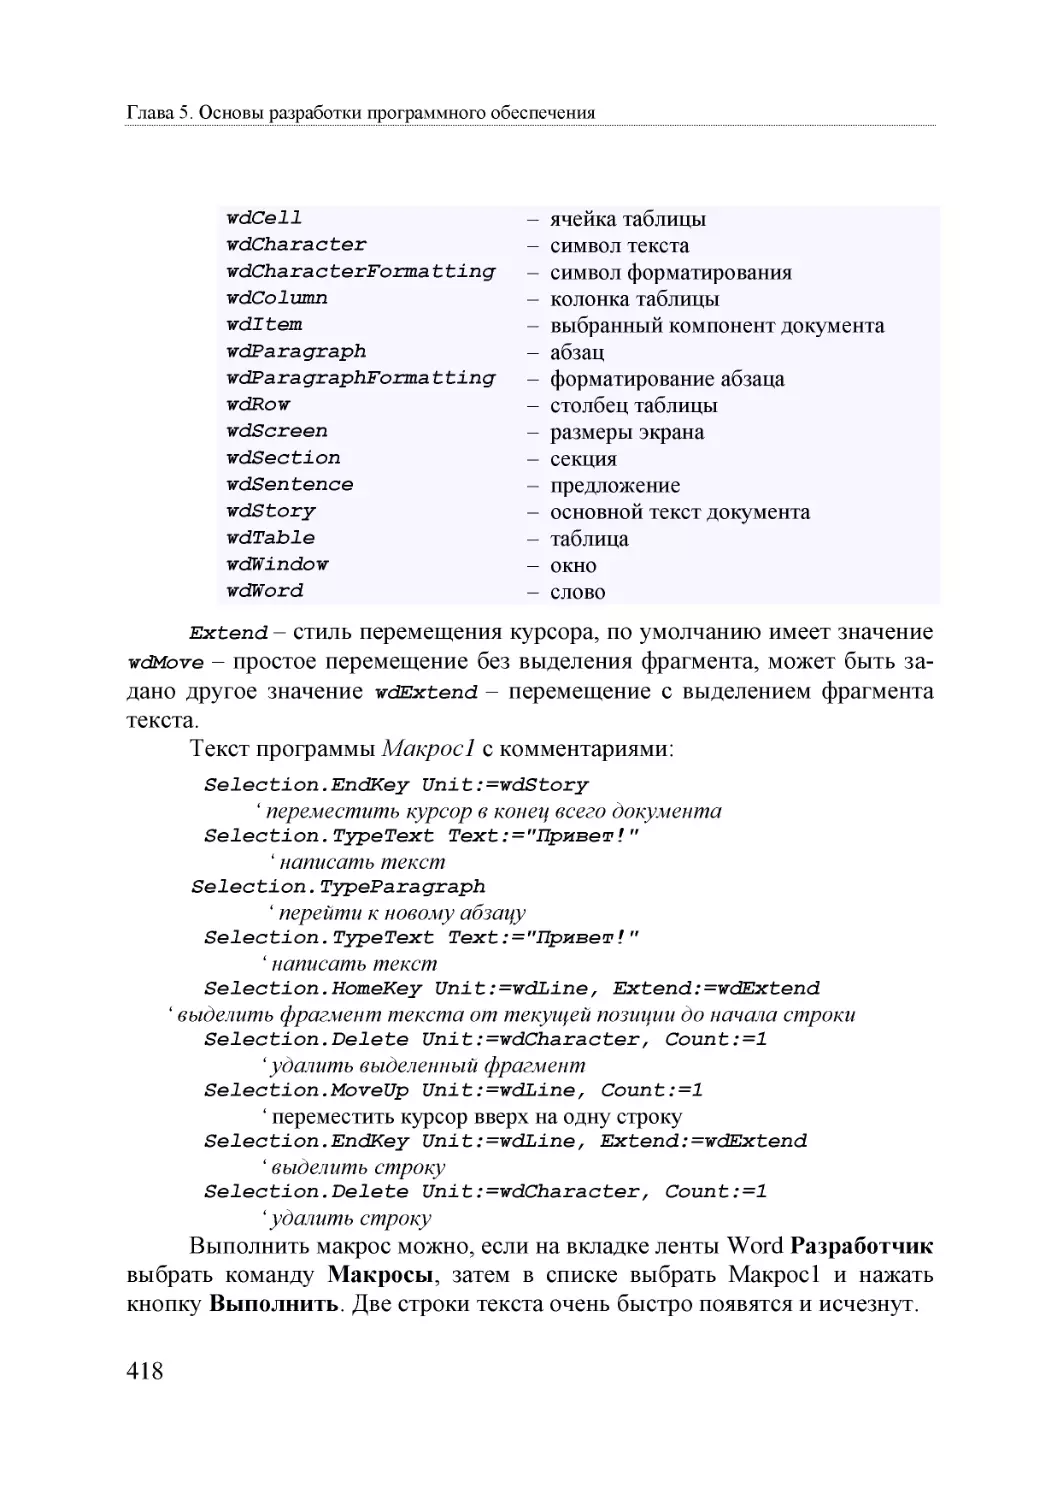 Informatika_Uchebnik_dlya_vuzov_2010 418